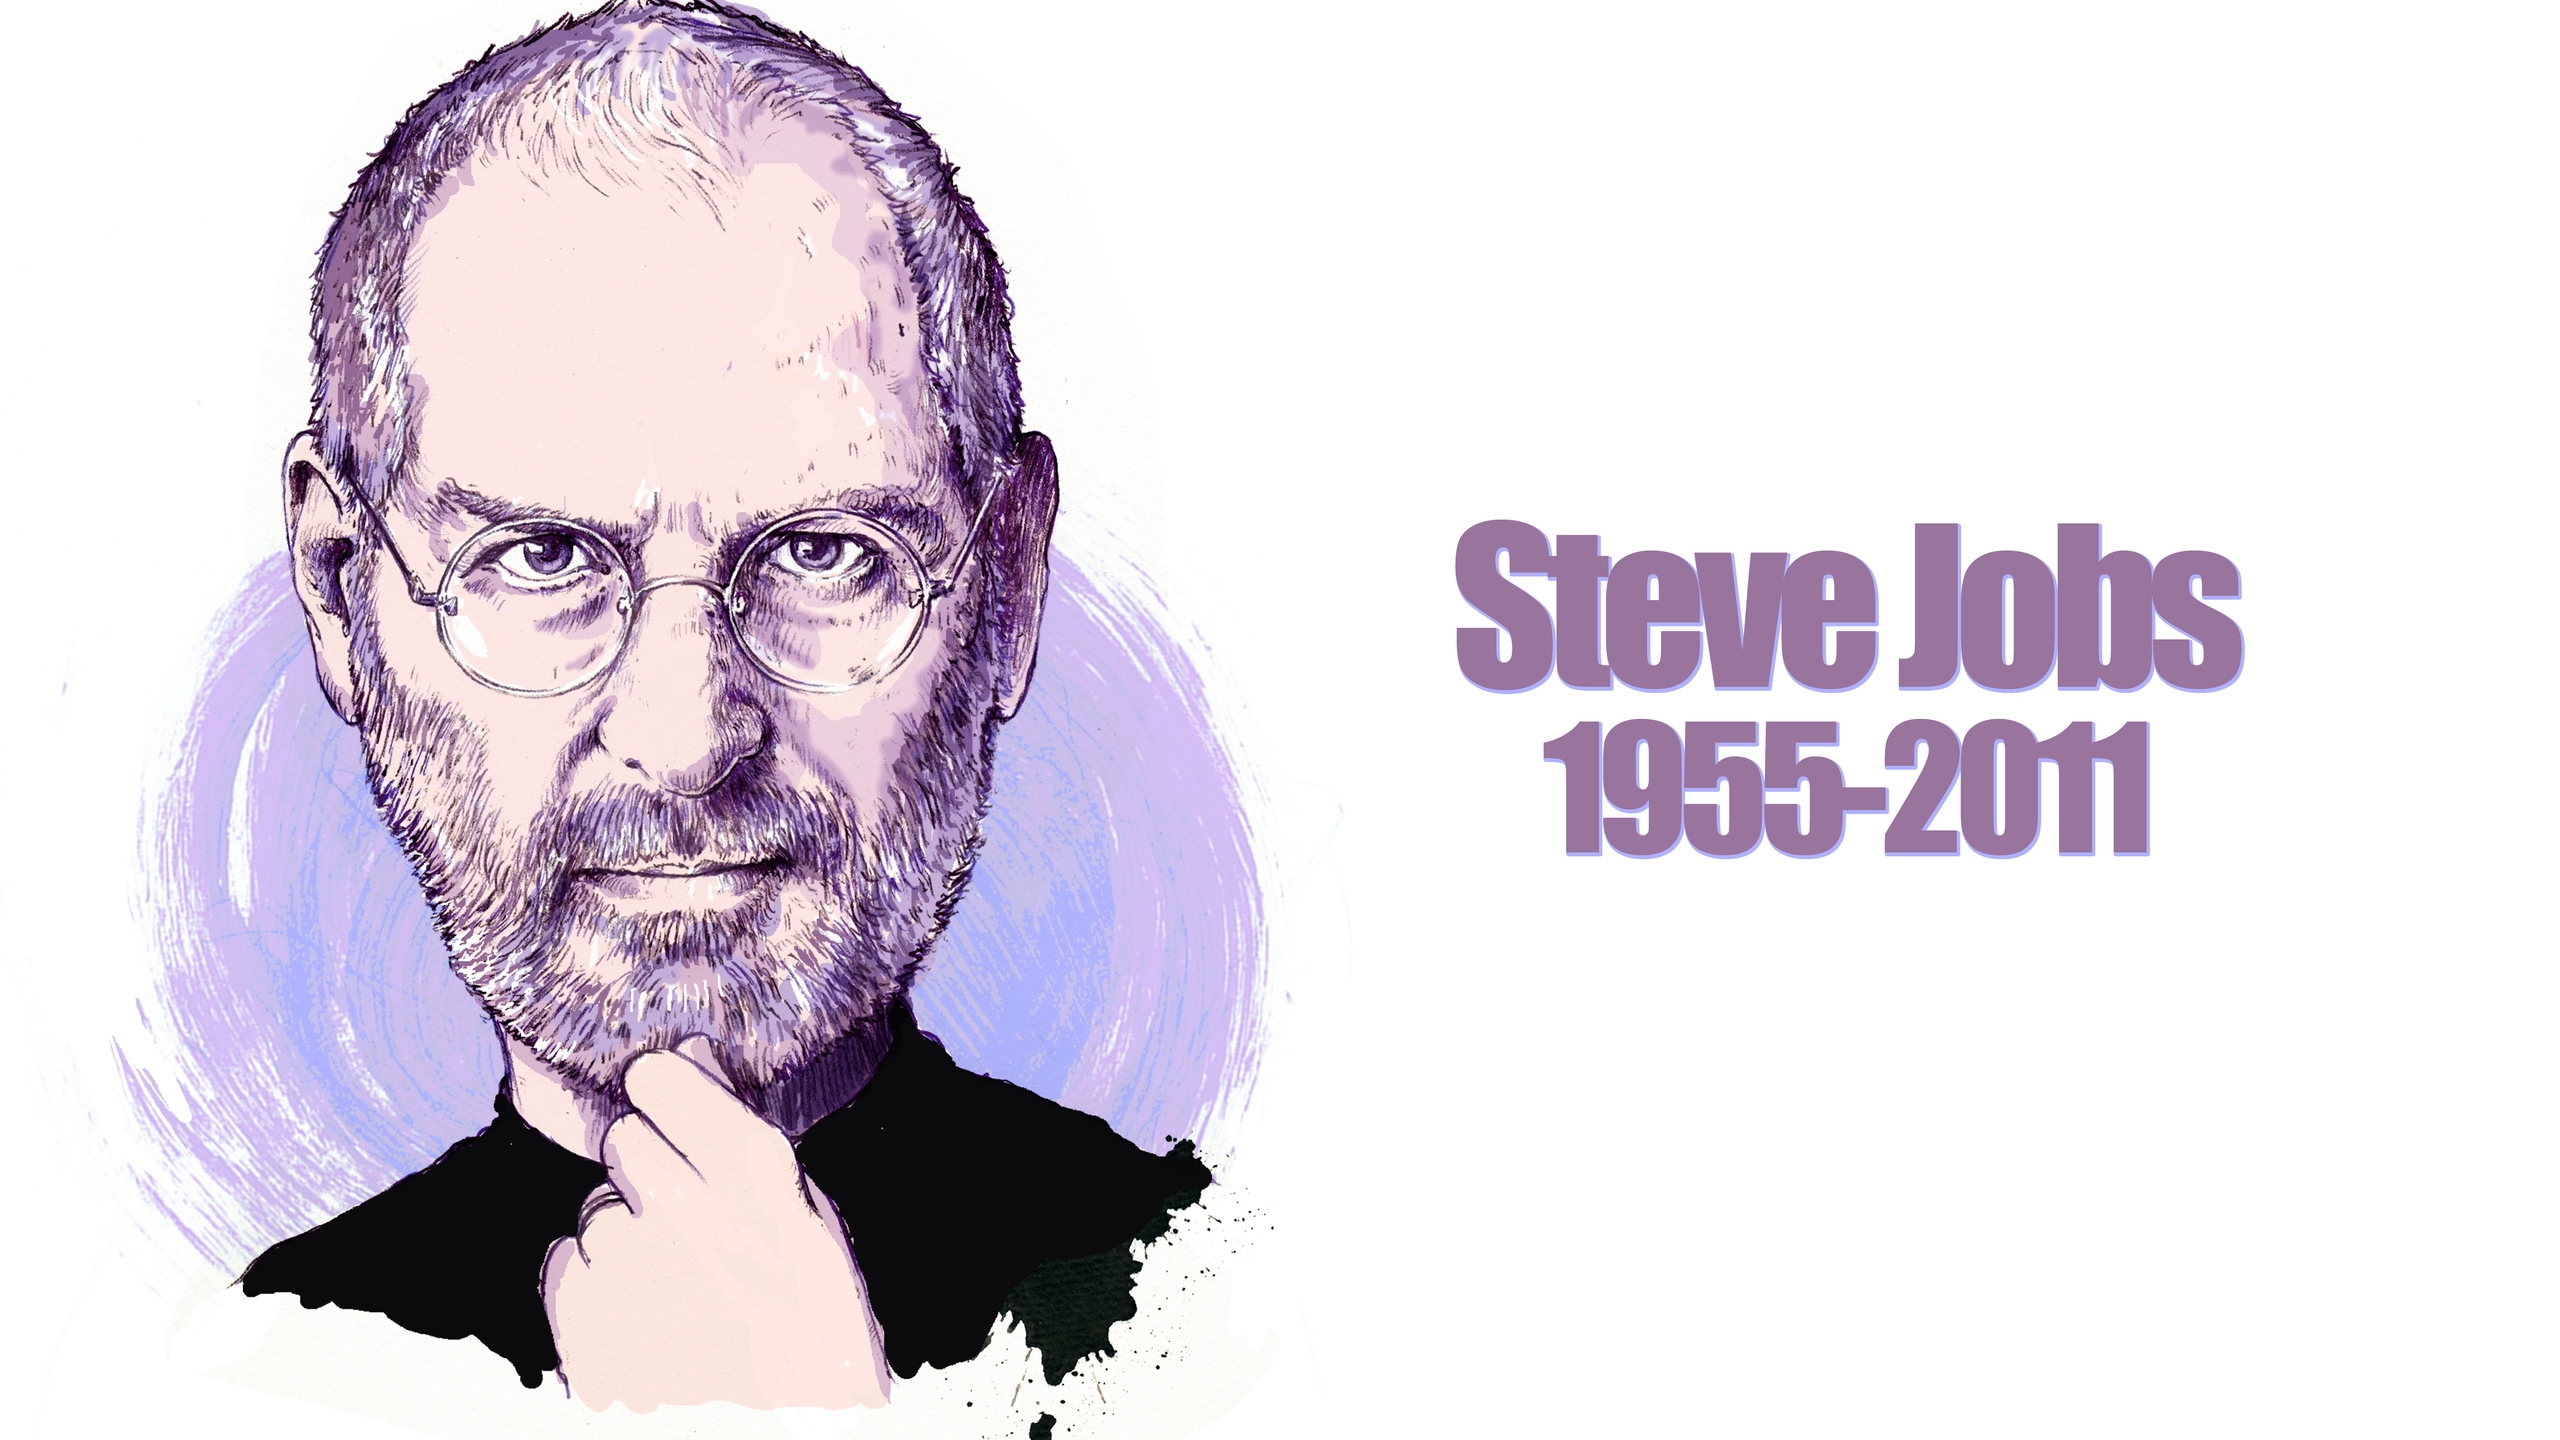 Steve Jobs Portrait for 2560x1440 HDTV resolution